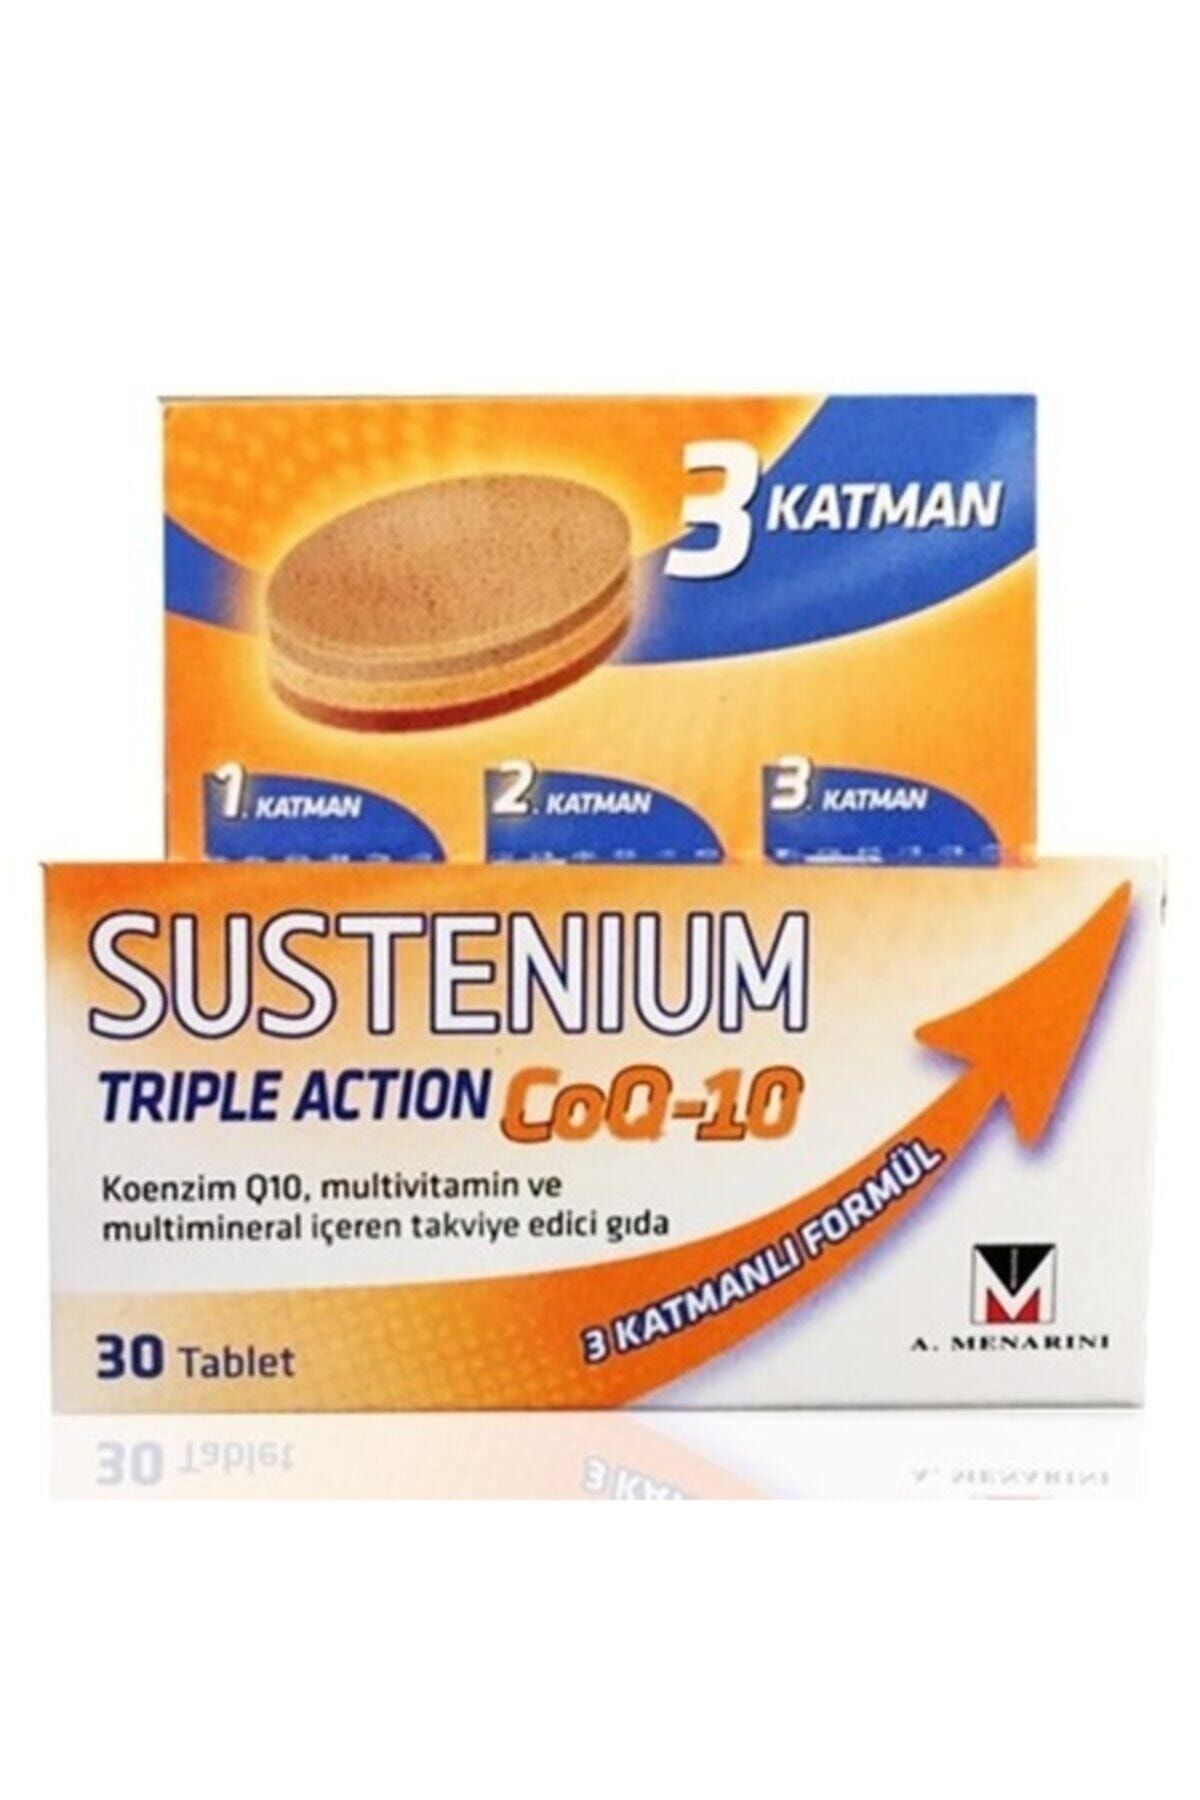 Sustenium Sustenıum Trıple Actıon Coq-10 30 Tablet Koenzim Q10